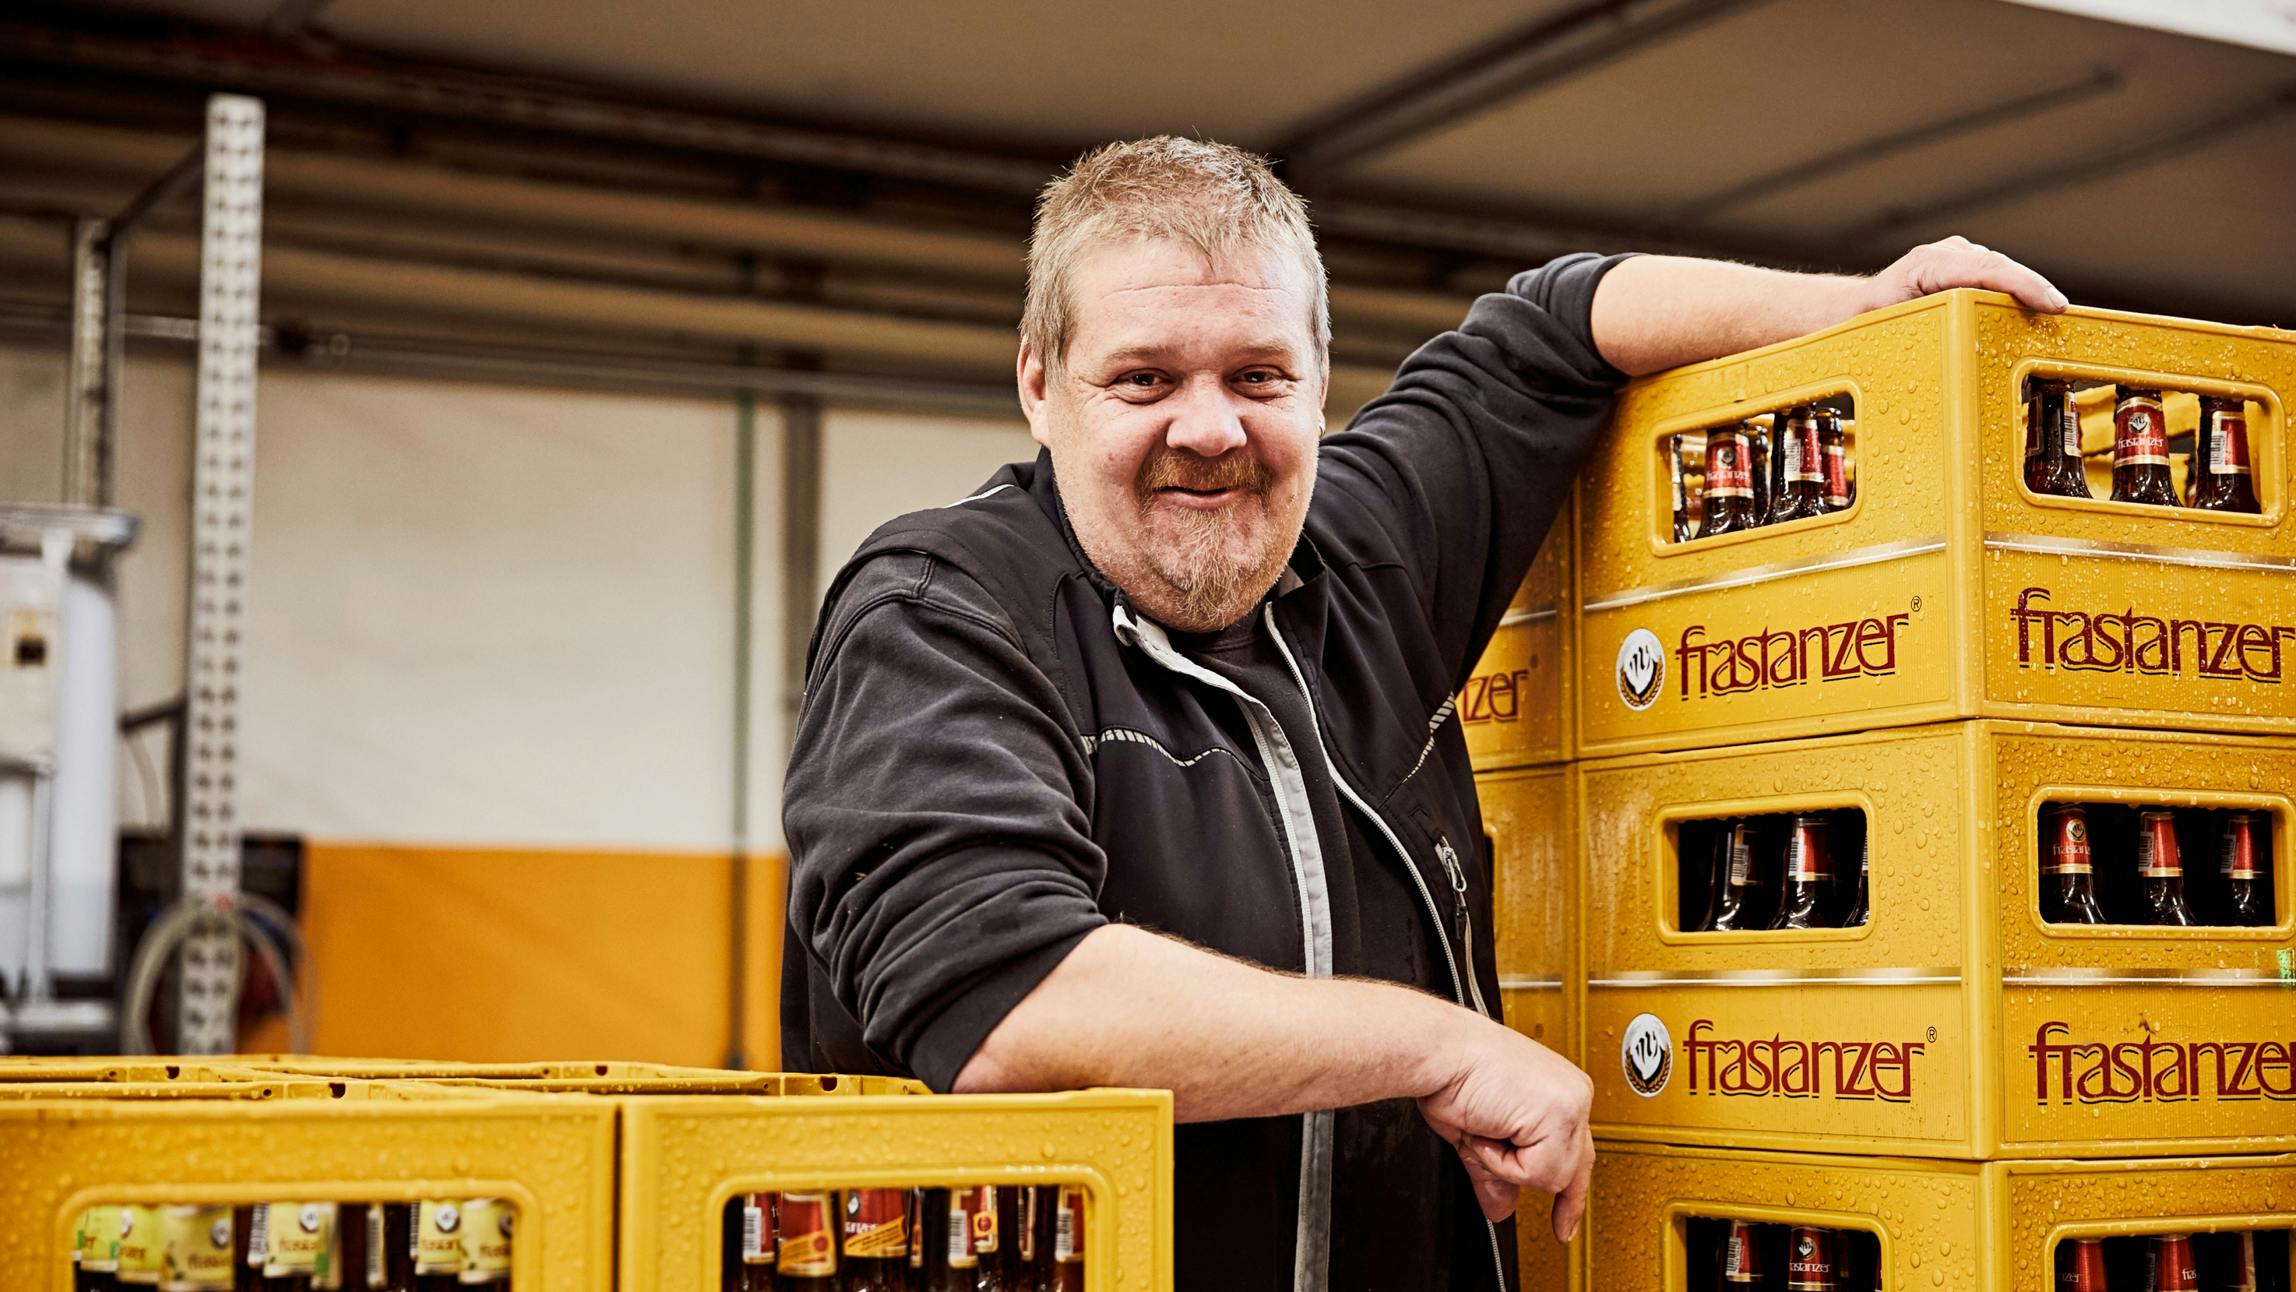 Ein Mitarbeiter der Frastanzer Brauerei neben mehreren gelben Frastanzer Bierkisten. © gobiq